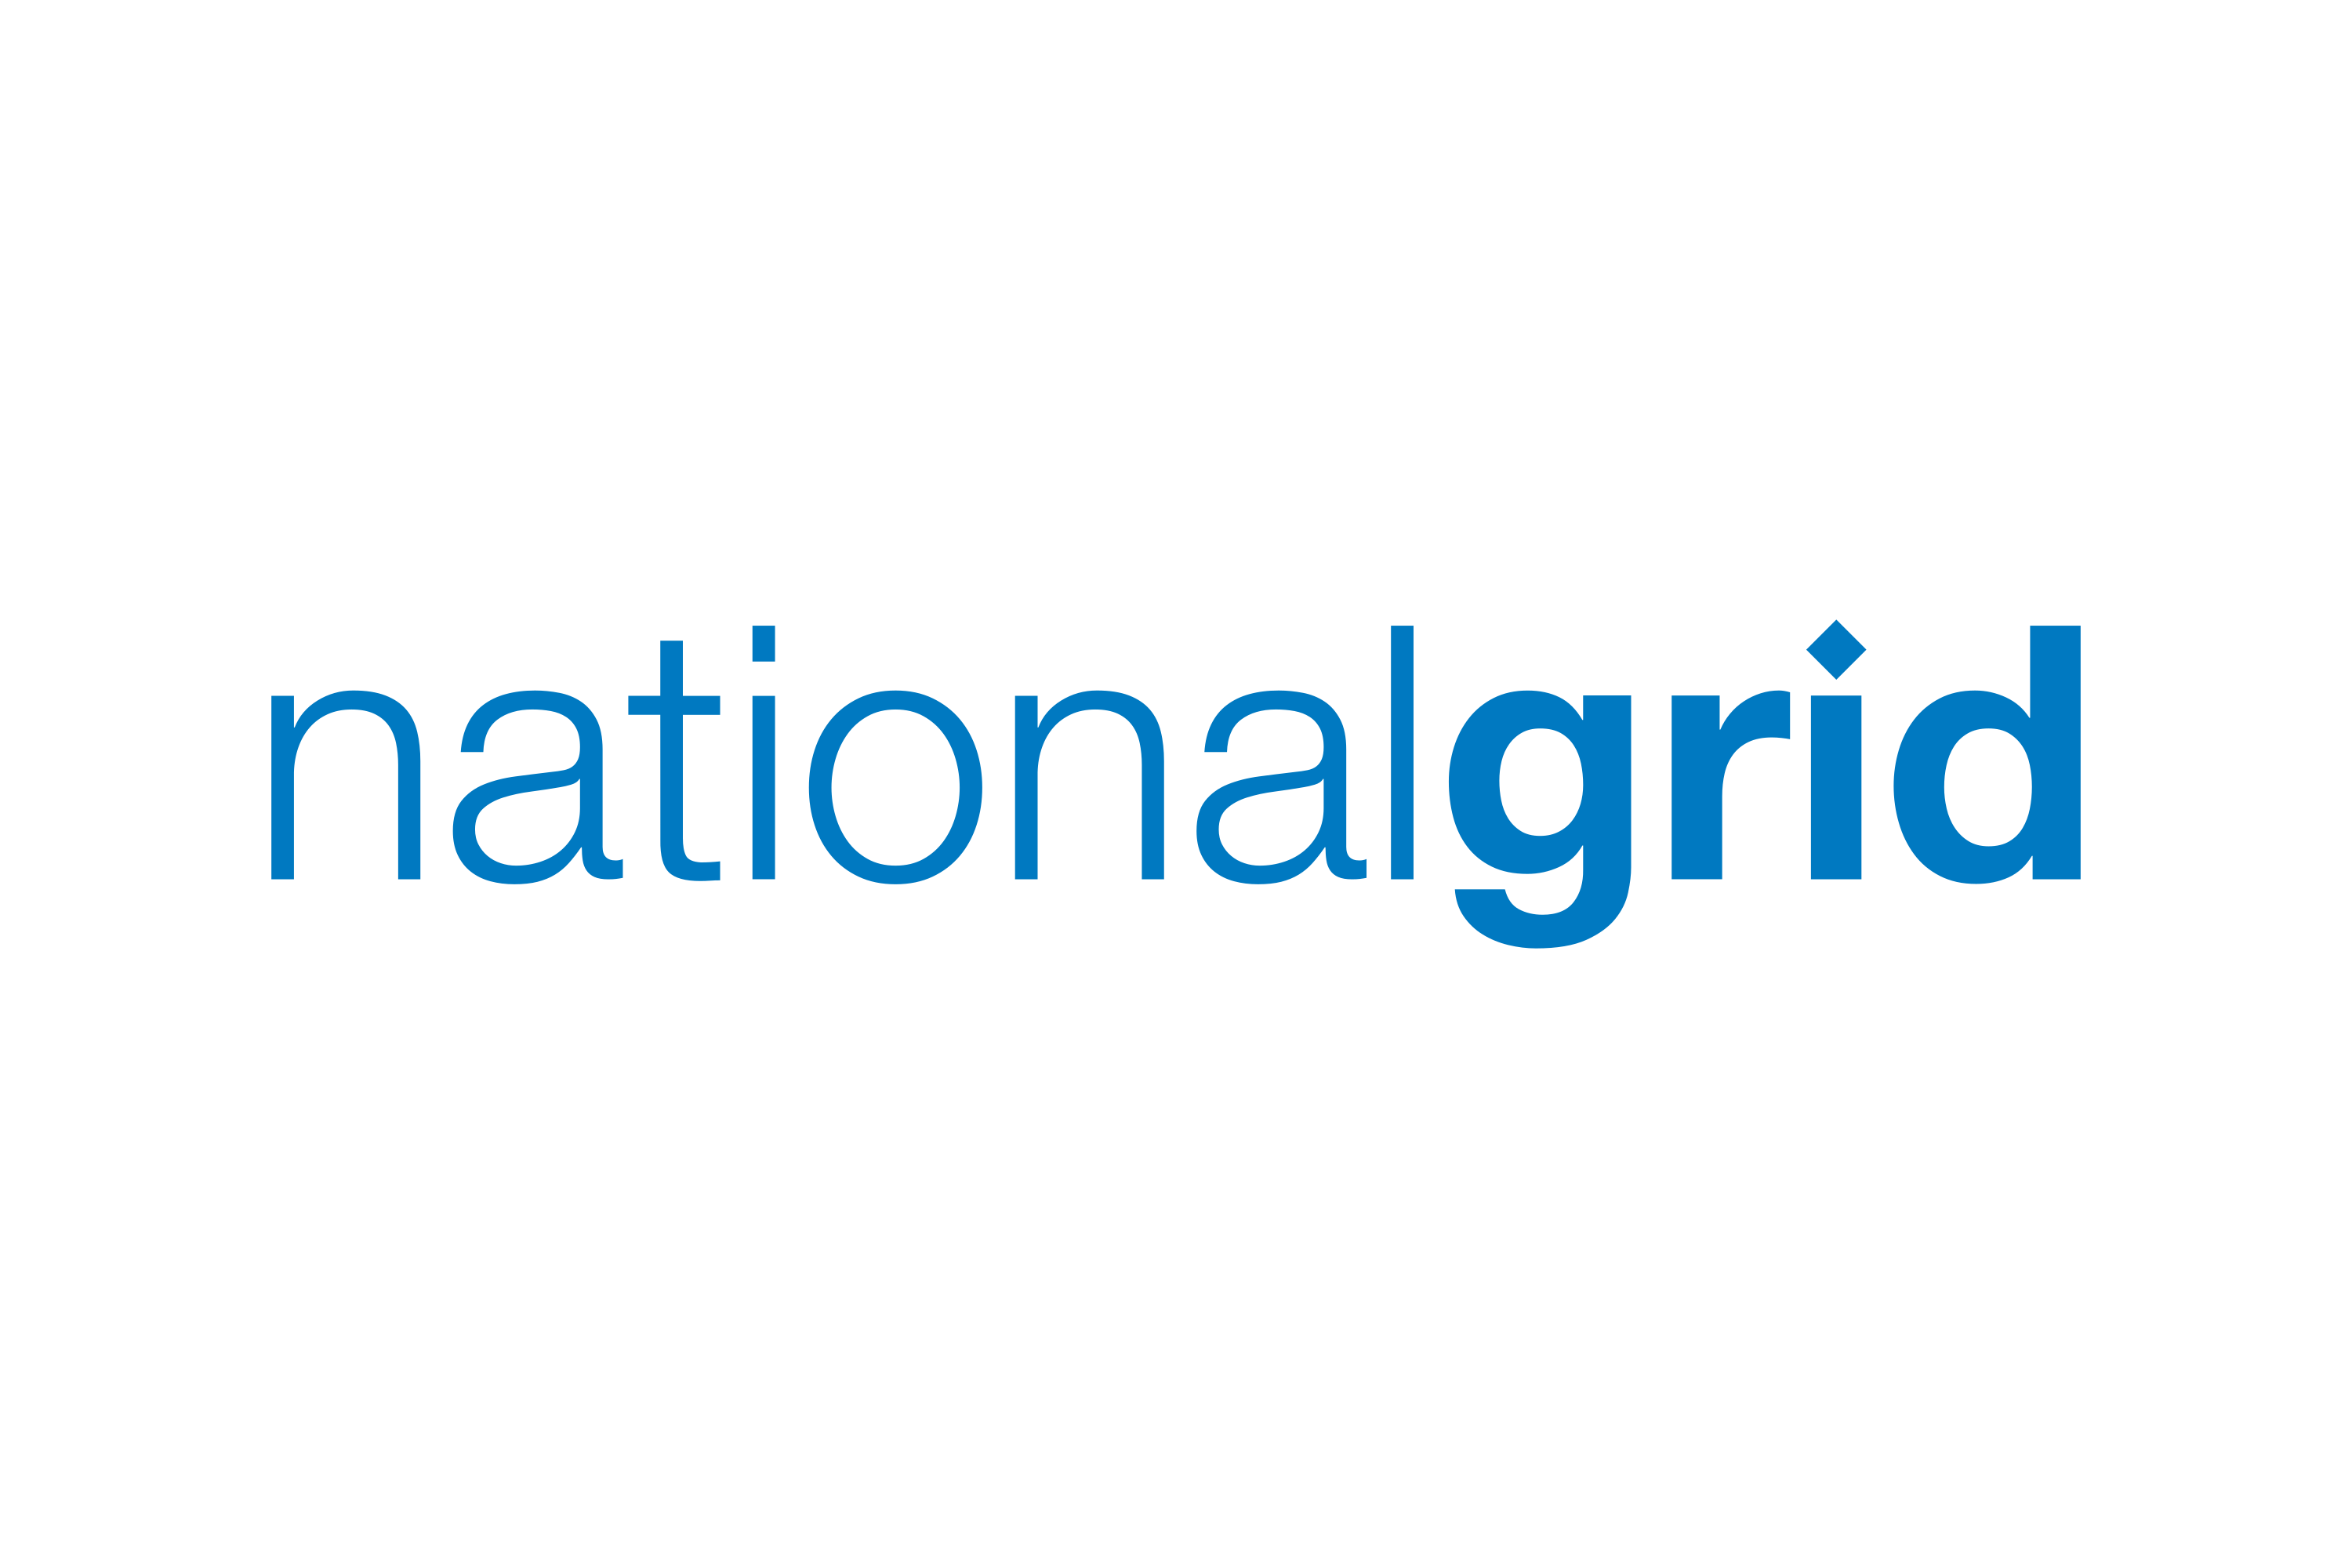 Download National Grid plc Logo in SVG Vector or PNG File Format - Logo